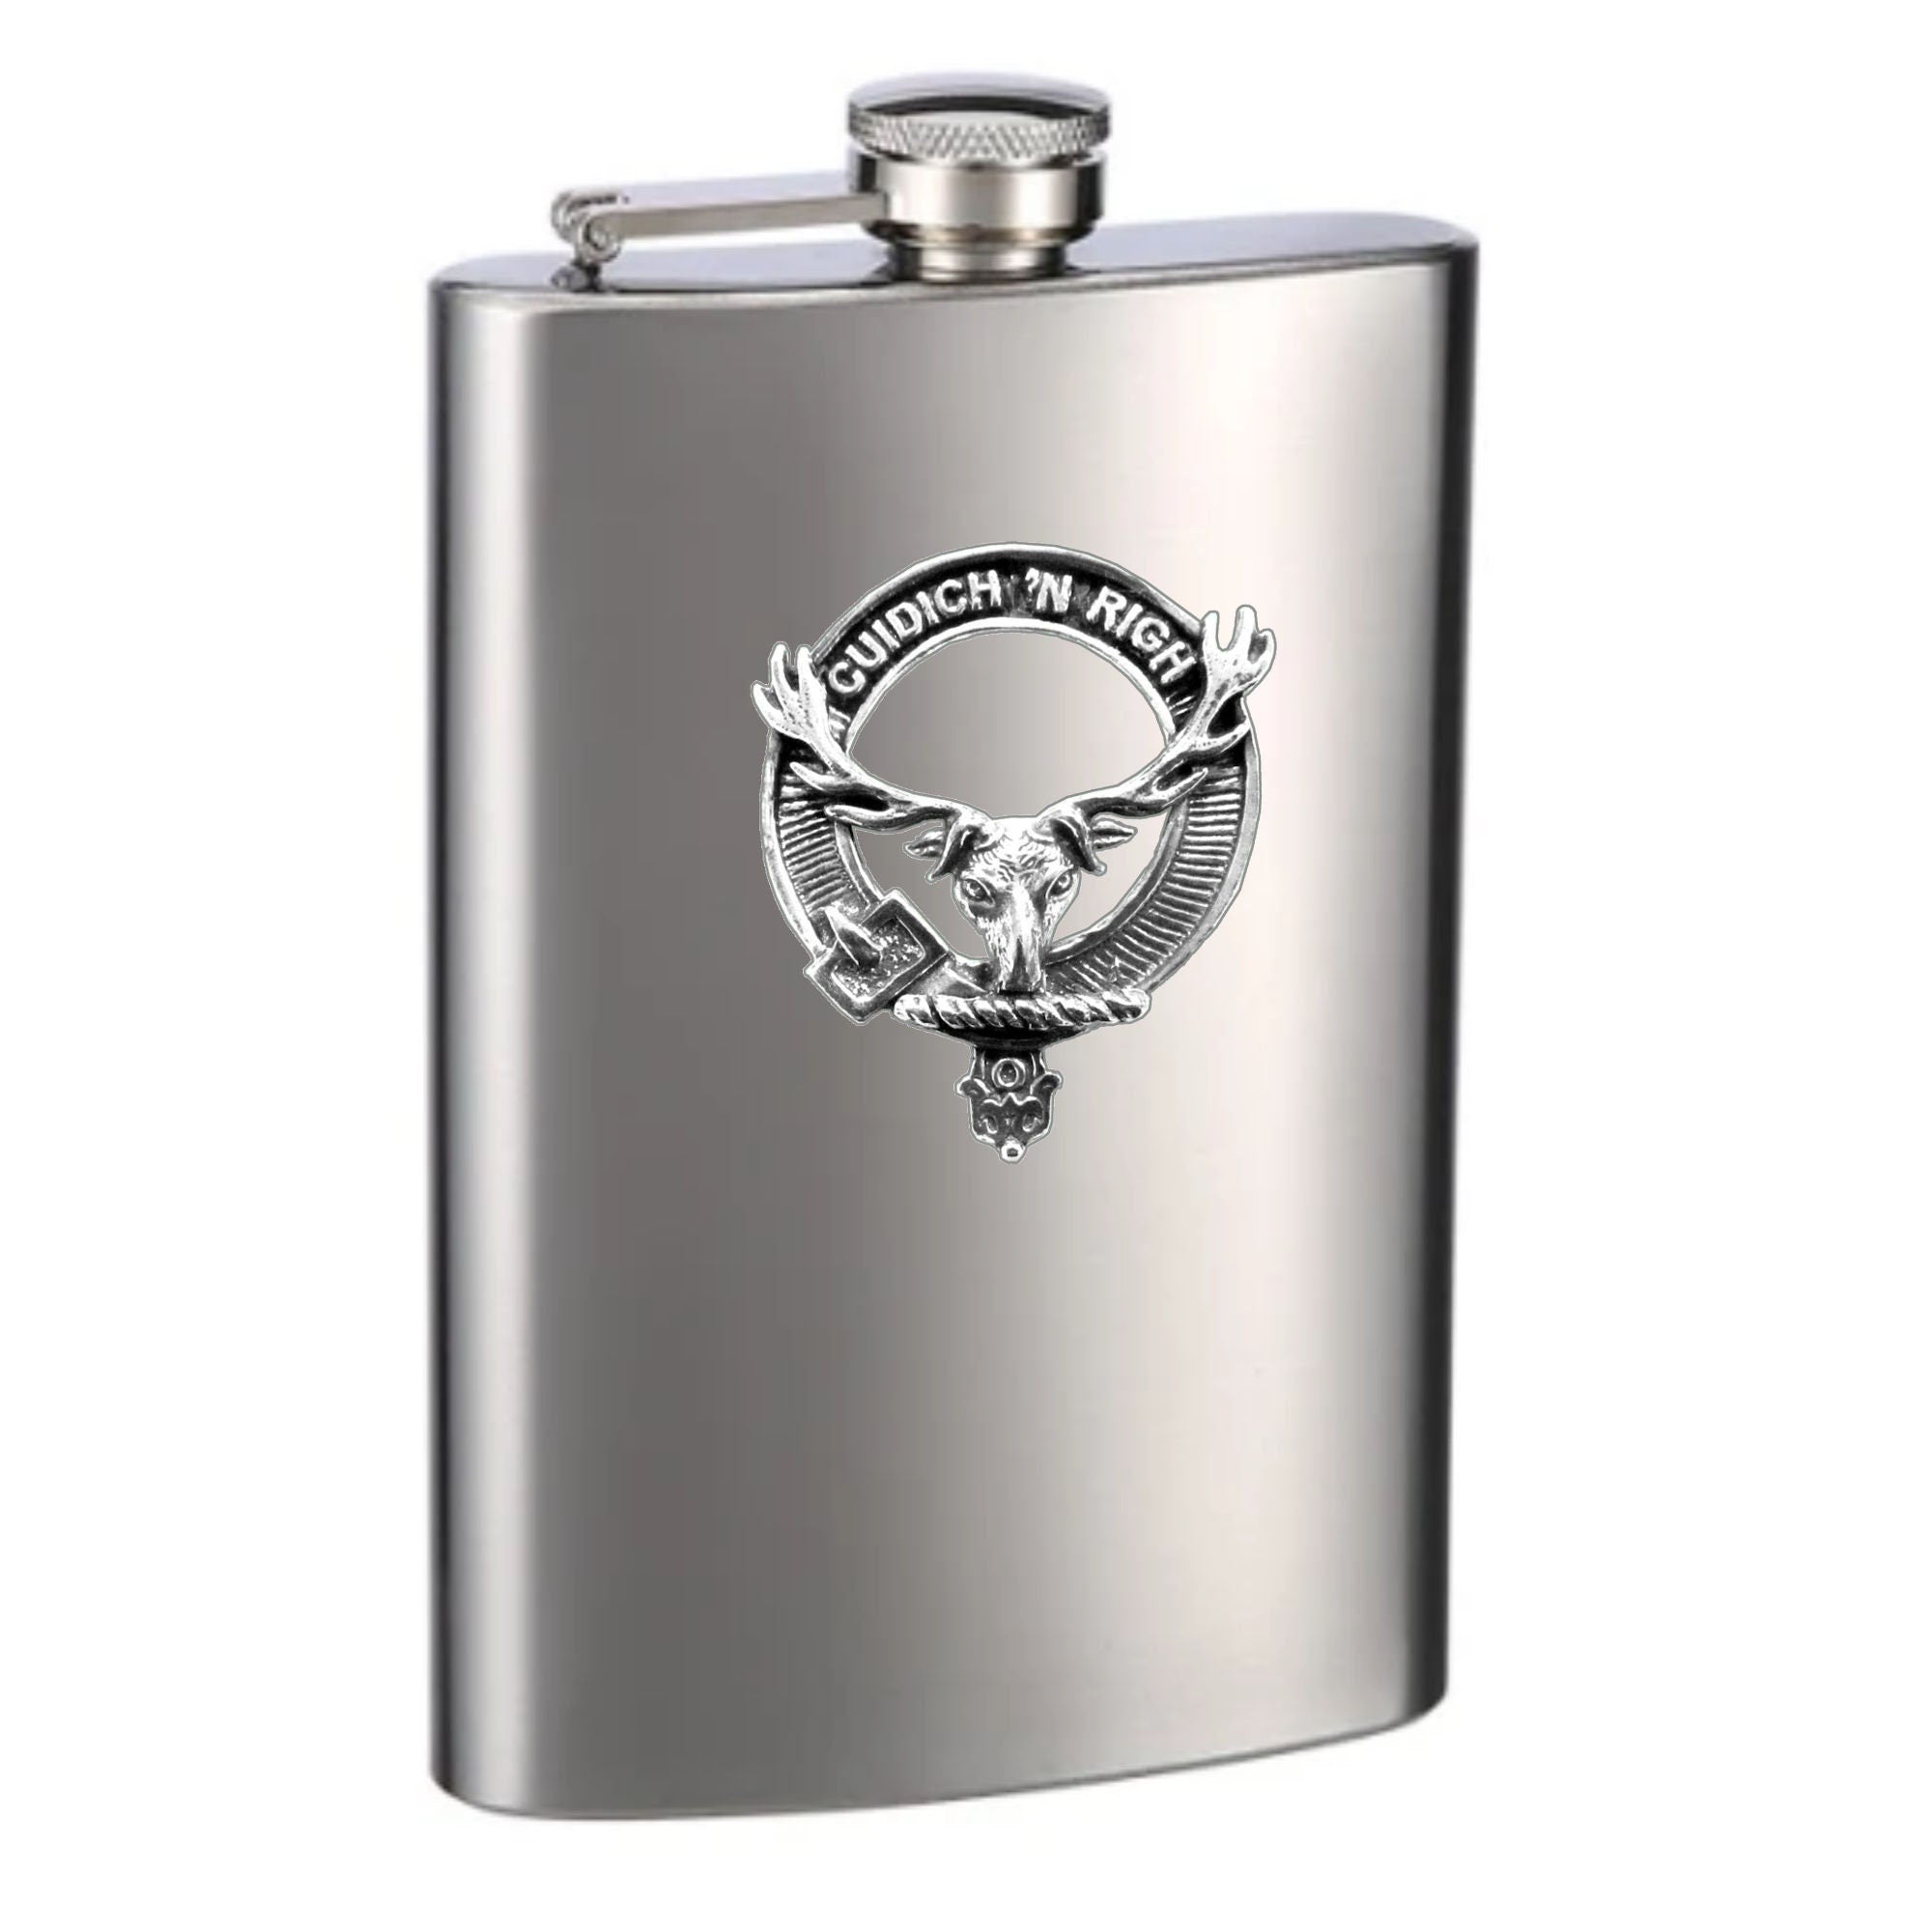 MacKenzie (Seaforth) 8oz Clan Crest Scottish Badge Stainless Steel Flask